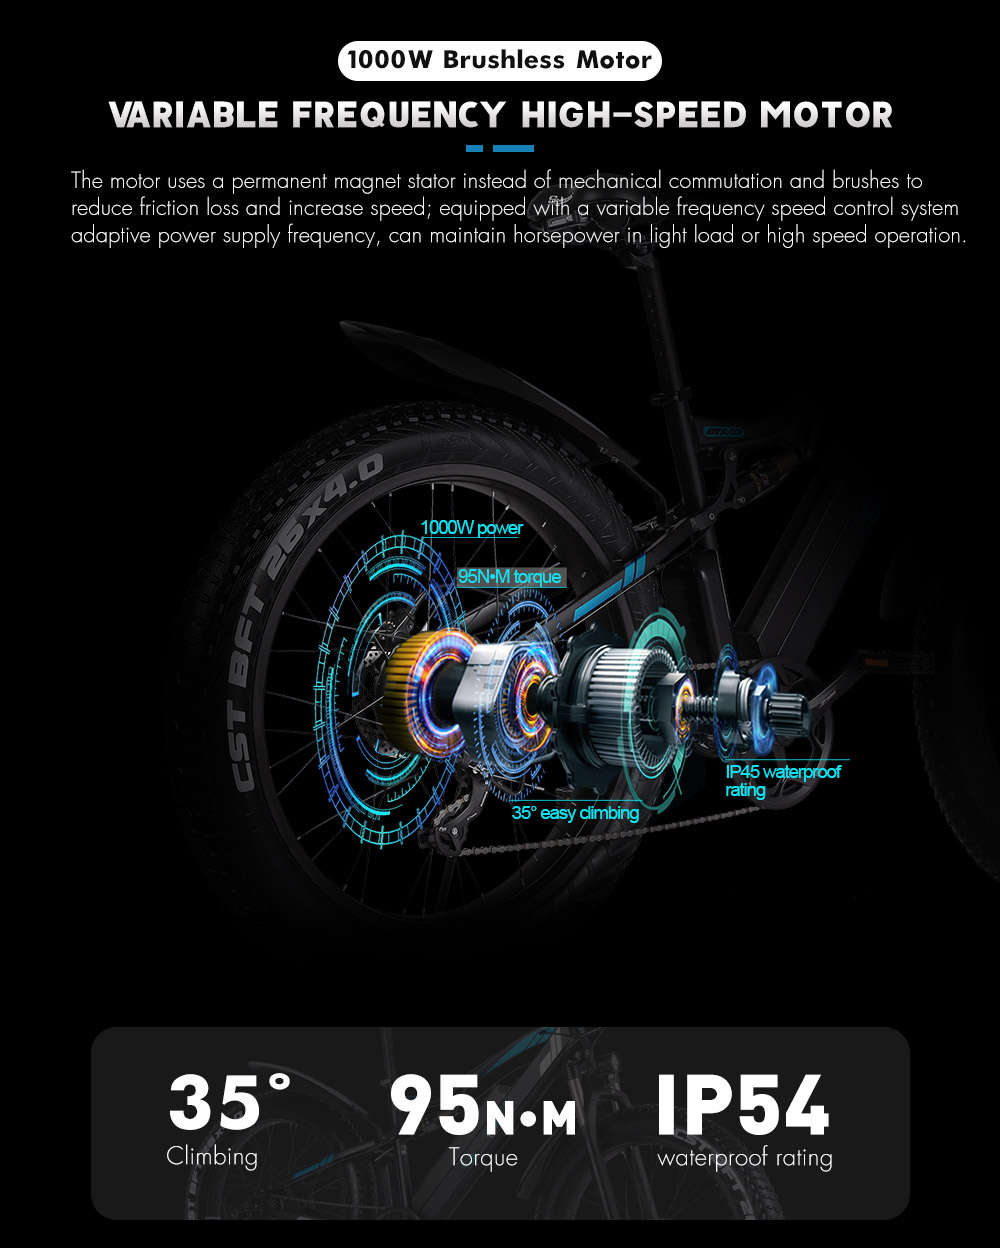 GUNAI MX03 1000W 48V 17Ah 26'' Elcykel 40km/h Maxhastighet 40-50km Körsträcka 150kg Maxbelastning - Svart